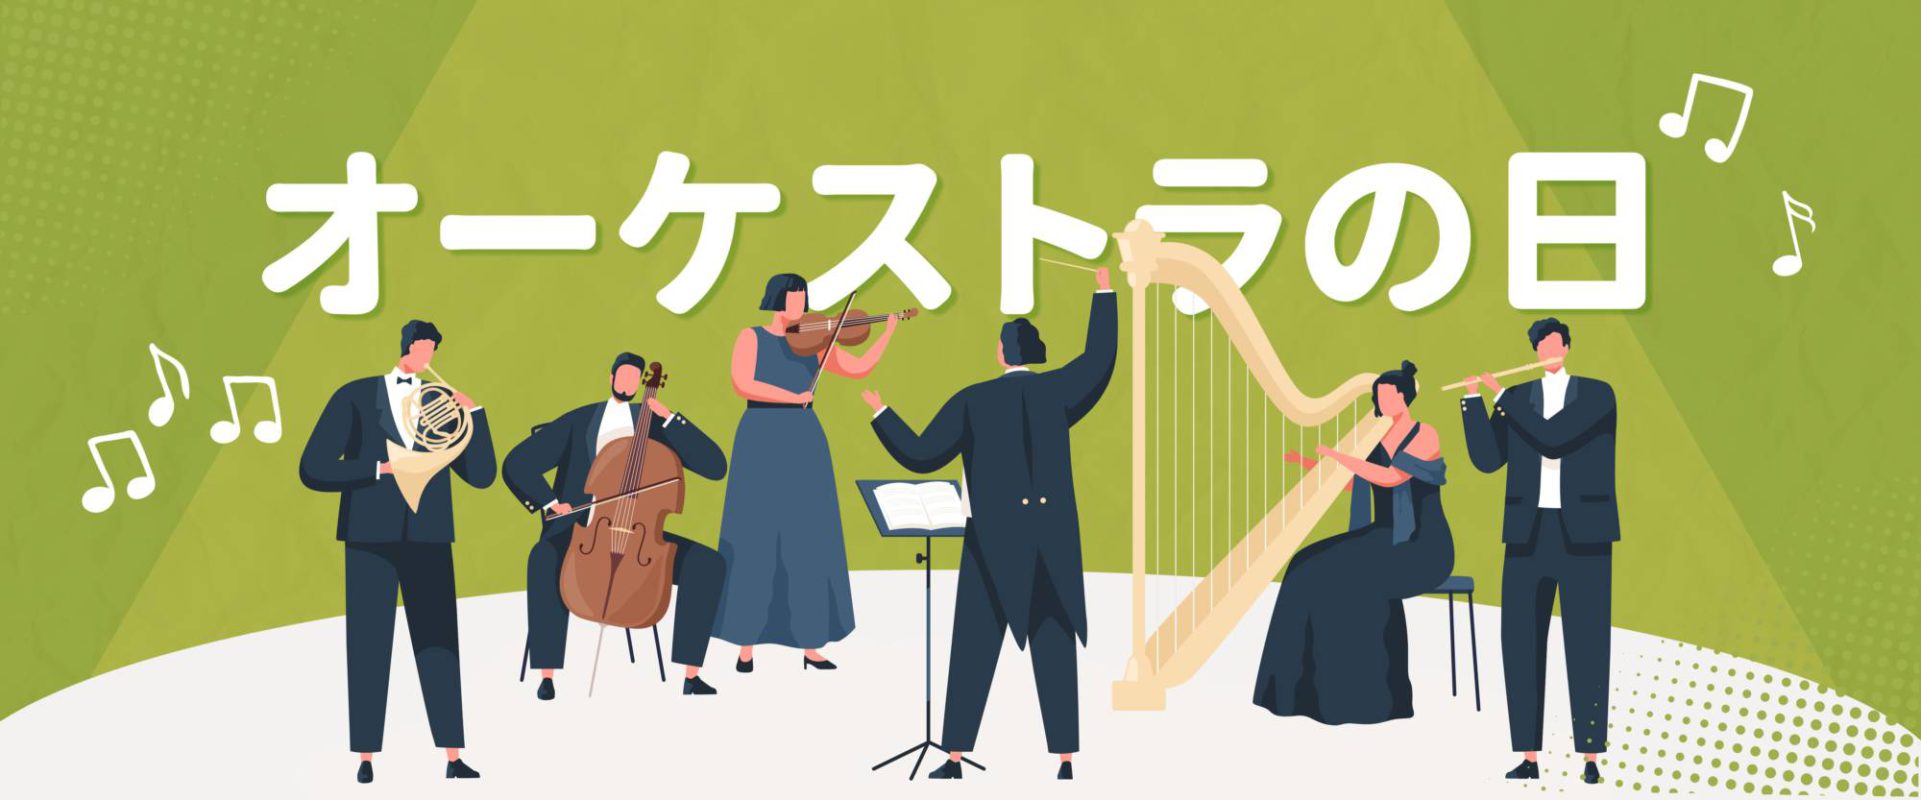 3月31日は日本でオーケストラの日とされており、クラシック交響曲を楽しむ日！